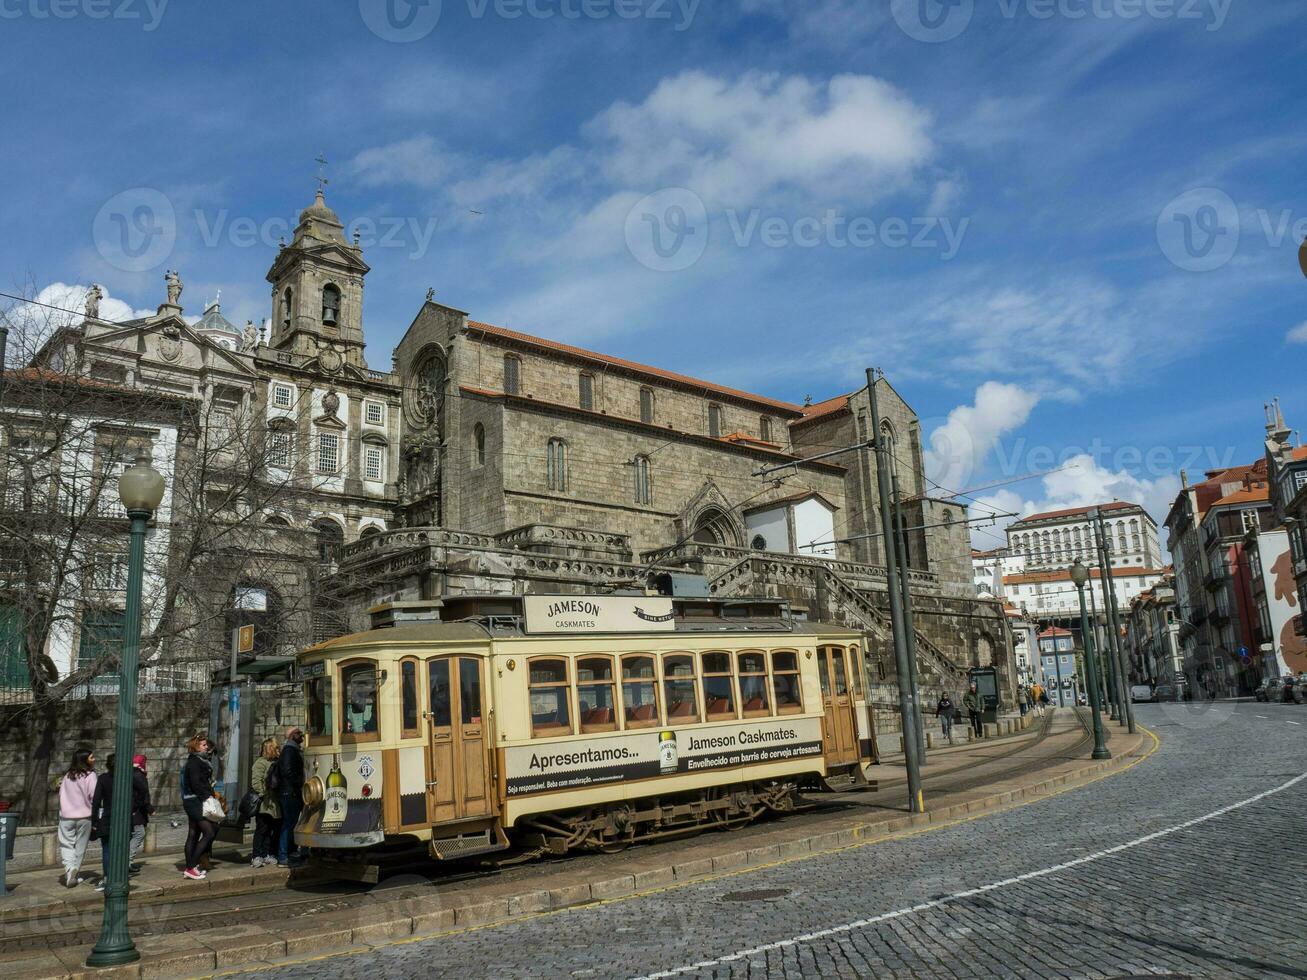 the city of Porto in Portugal photo